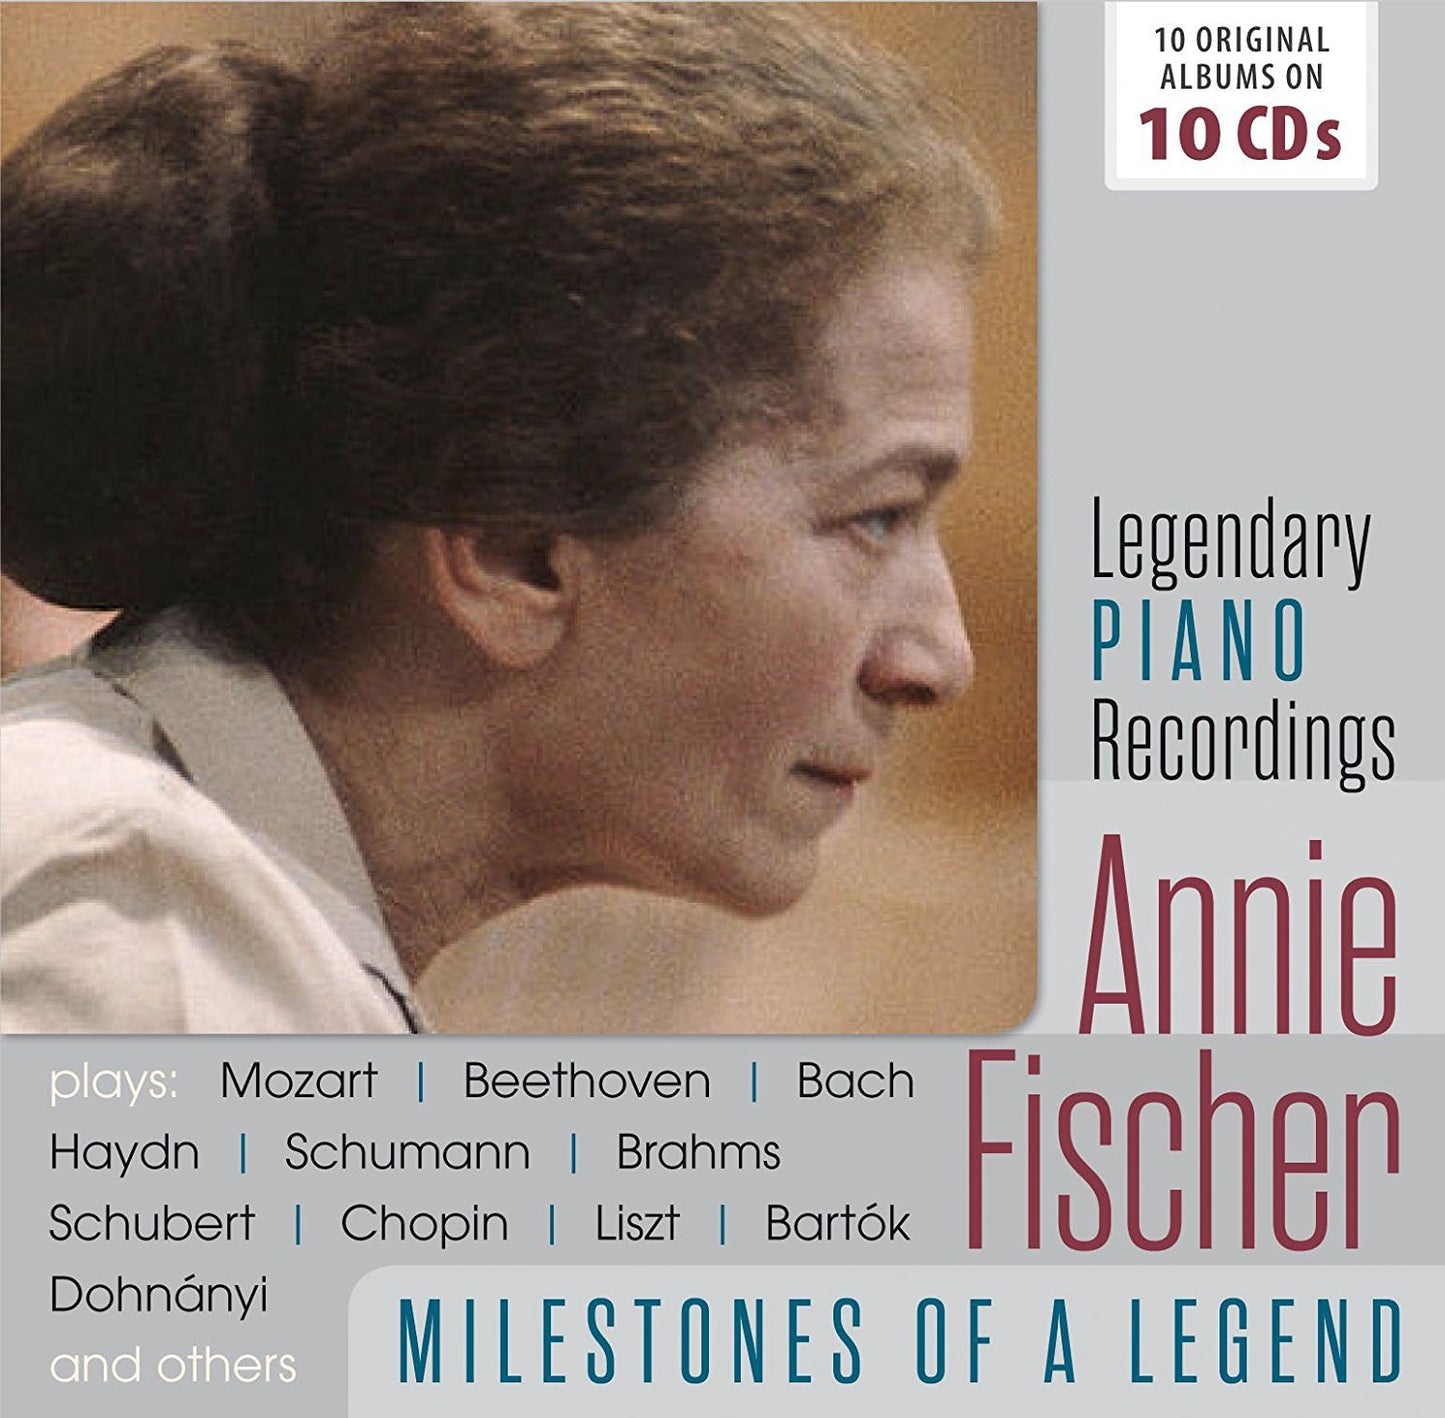 ANNIE FISCHER: MILESTONES OF A LEGEND (10 CDS)